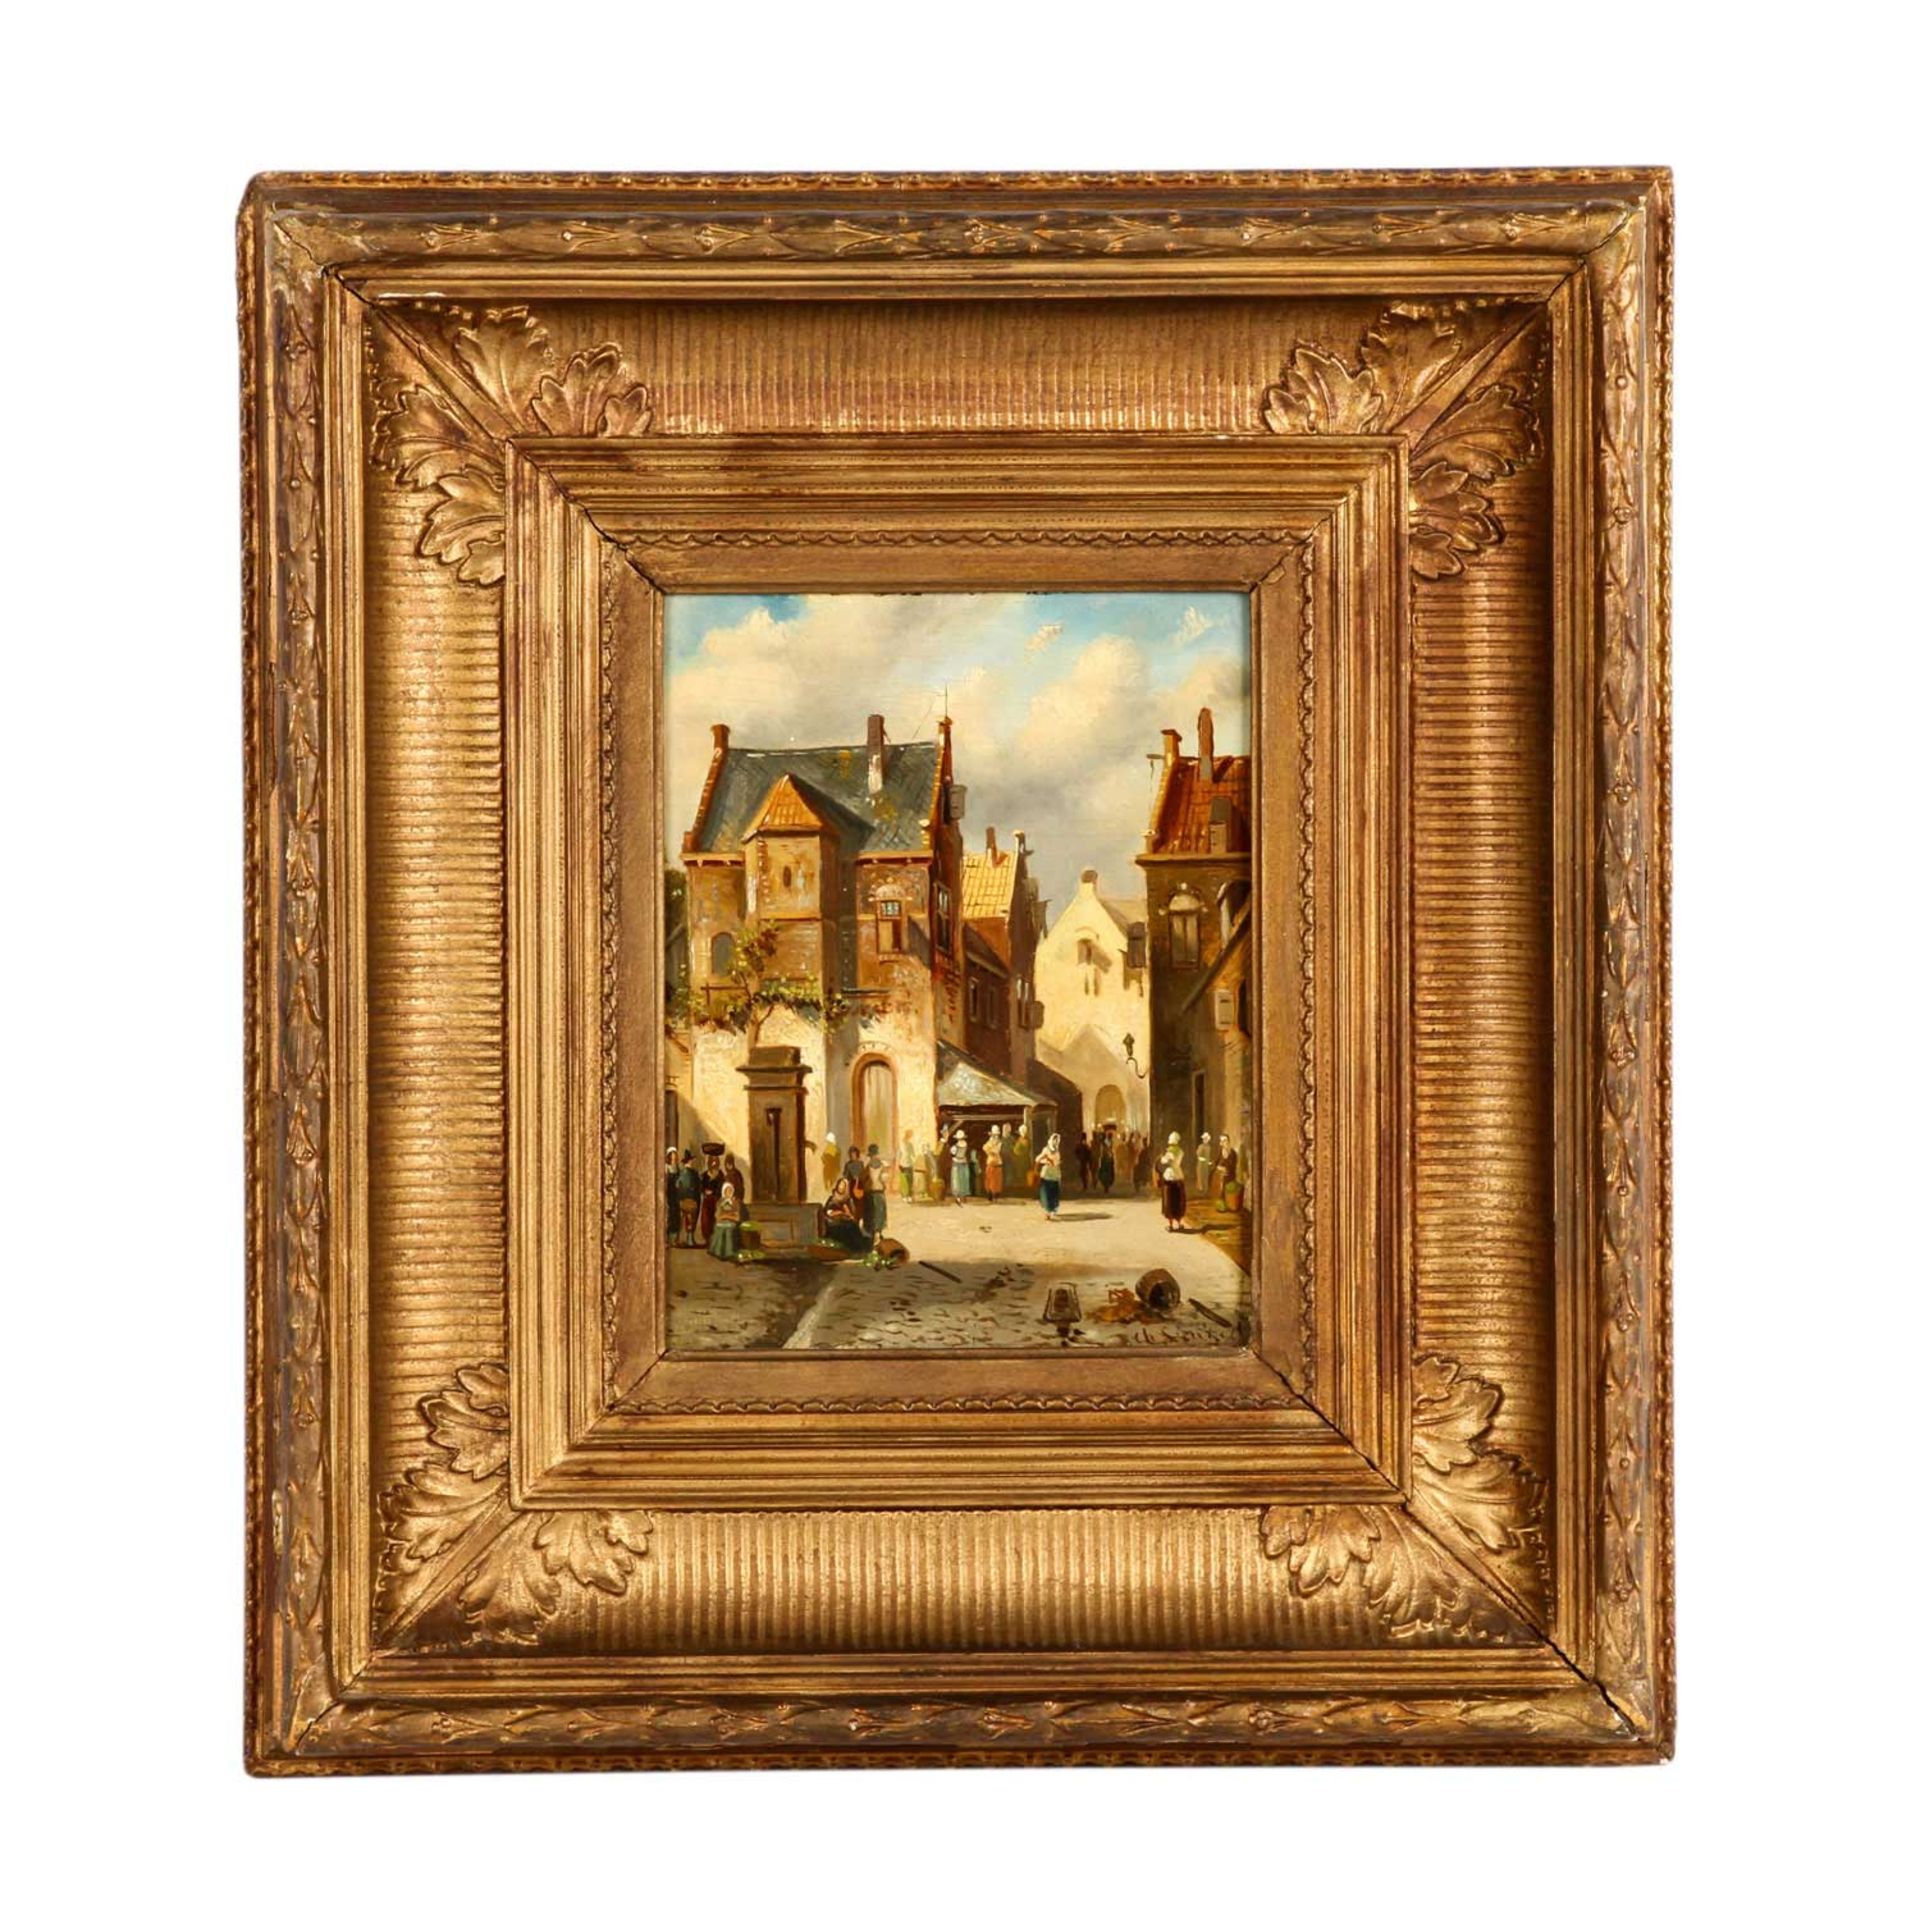 LEICKERT, CHARLES (1816-1907, belgischer Maler), "Markttag in der Stadt", mit zahlreichen Personen - Bild 2 aus 4